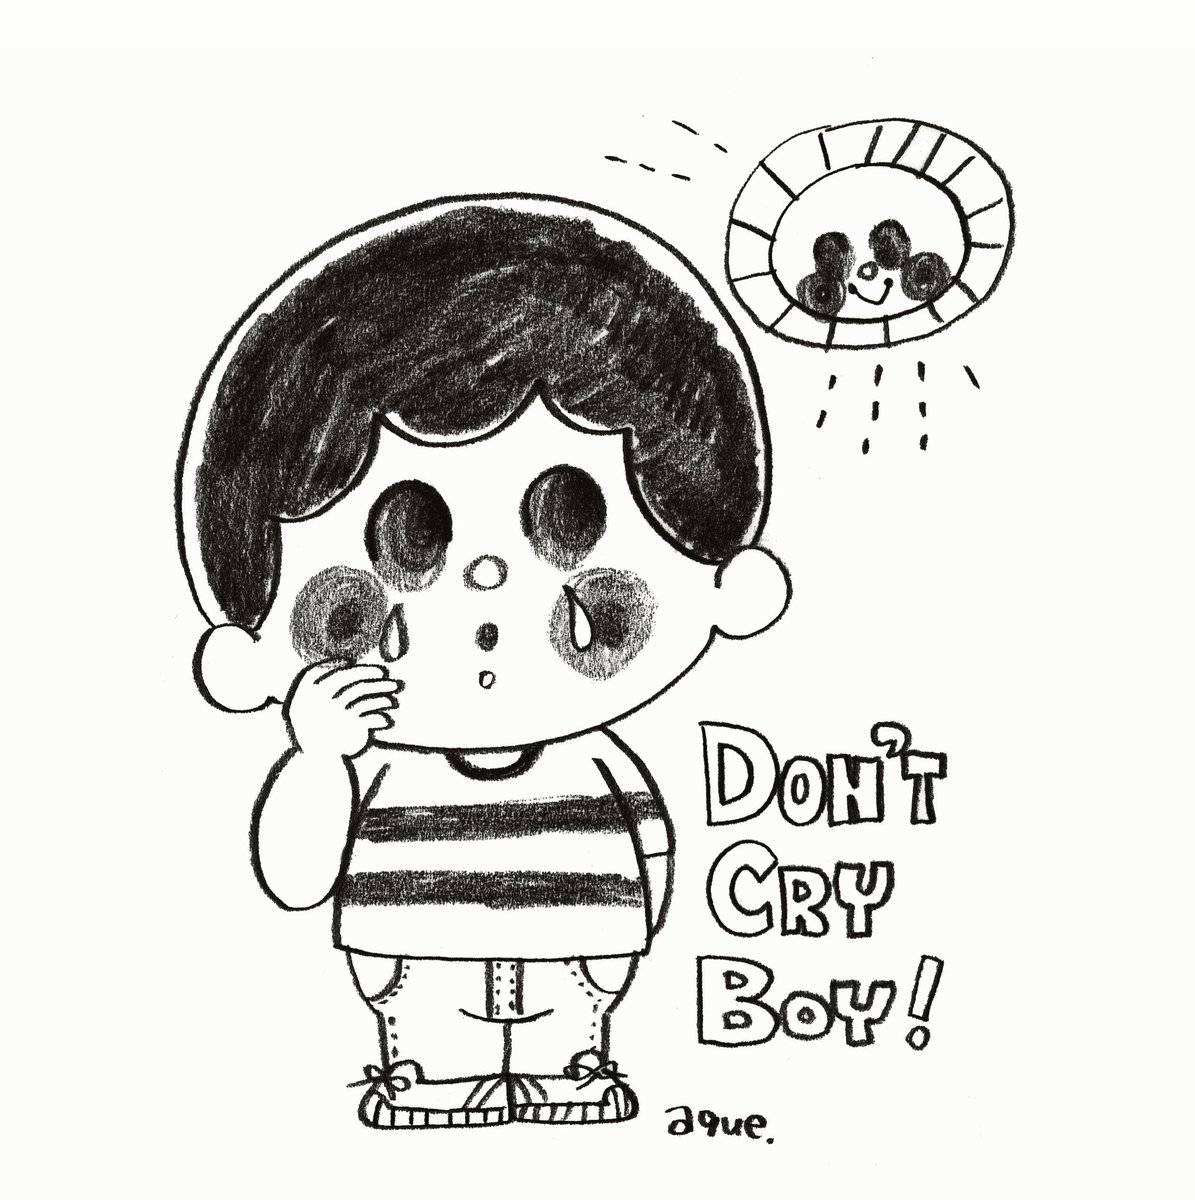 【1日1枚ラクガキ＊】
Don’t Cry Boy
#illust #illustration #illustrator
#kidsillustration
#イラスト #イラストレーター
#あくざわめぐみ #MegumiAkuzawa
#こども #こどもイラスト
#春のイラスト